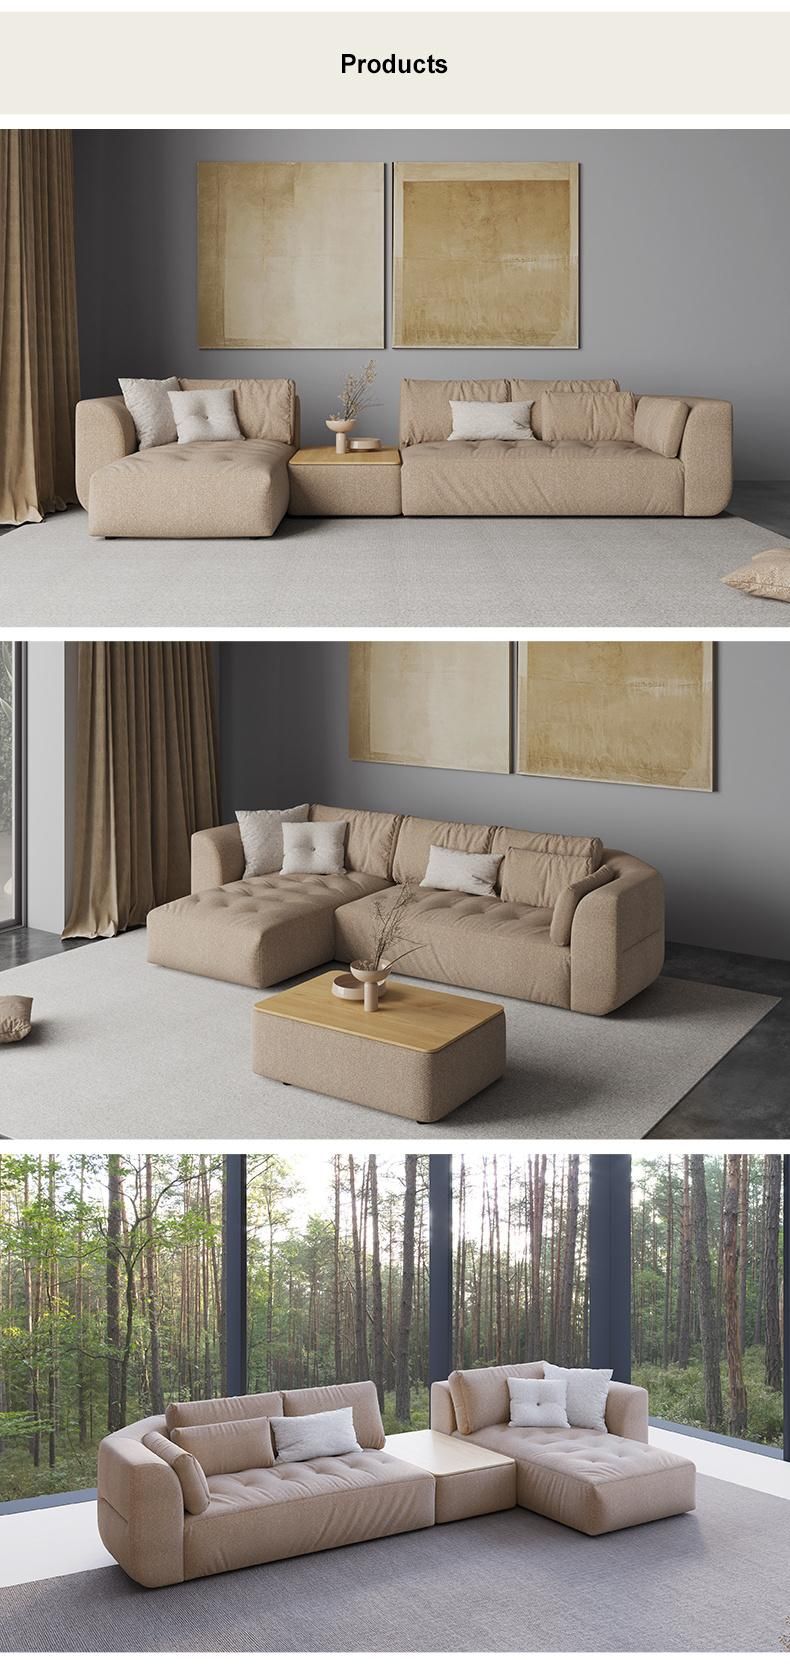 with Armrest High Back Furniture Corner Set Sectional Recliner Sofa